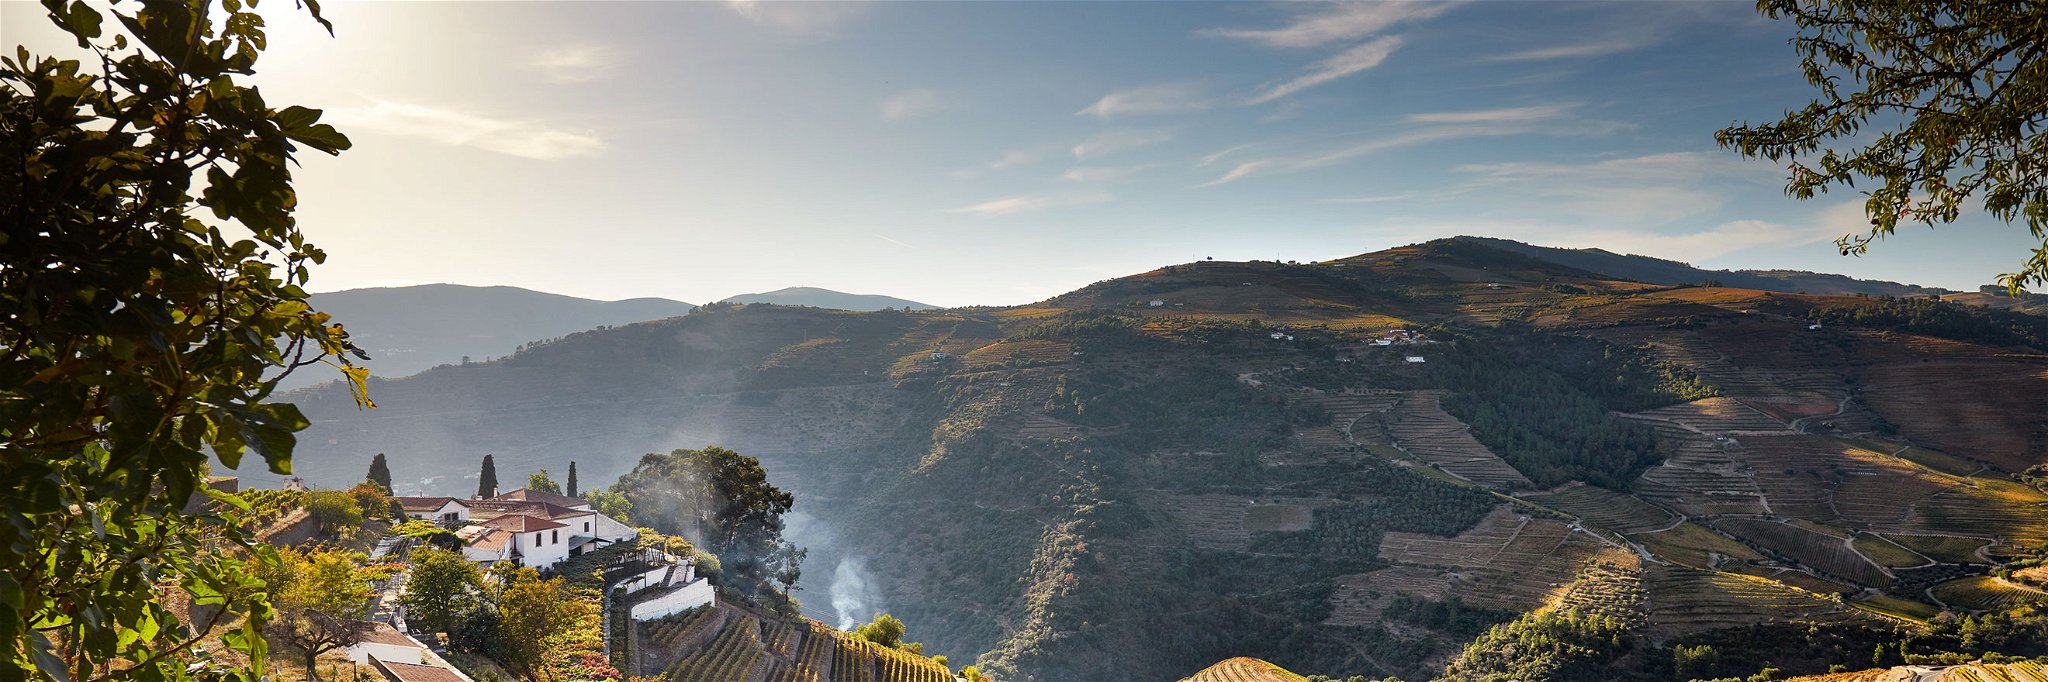 Auf den Berghängen des Douros und seiner Nebenflüsse wachsen auf verwittertem Granit die Trauben für den Portwein.